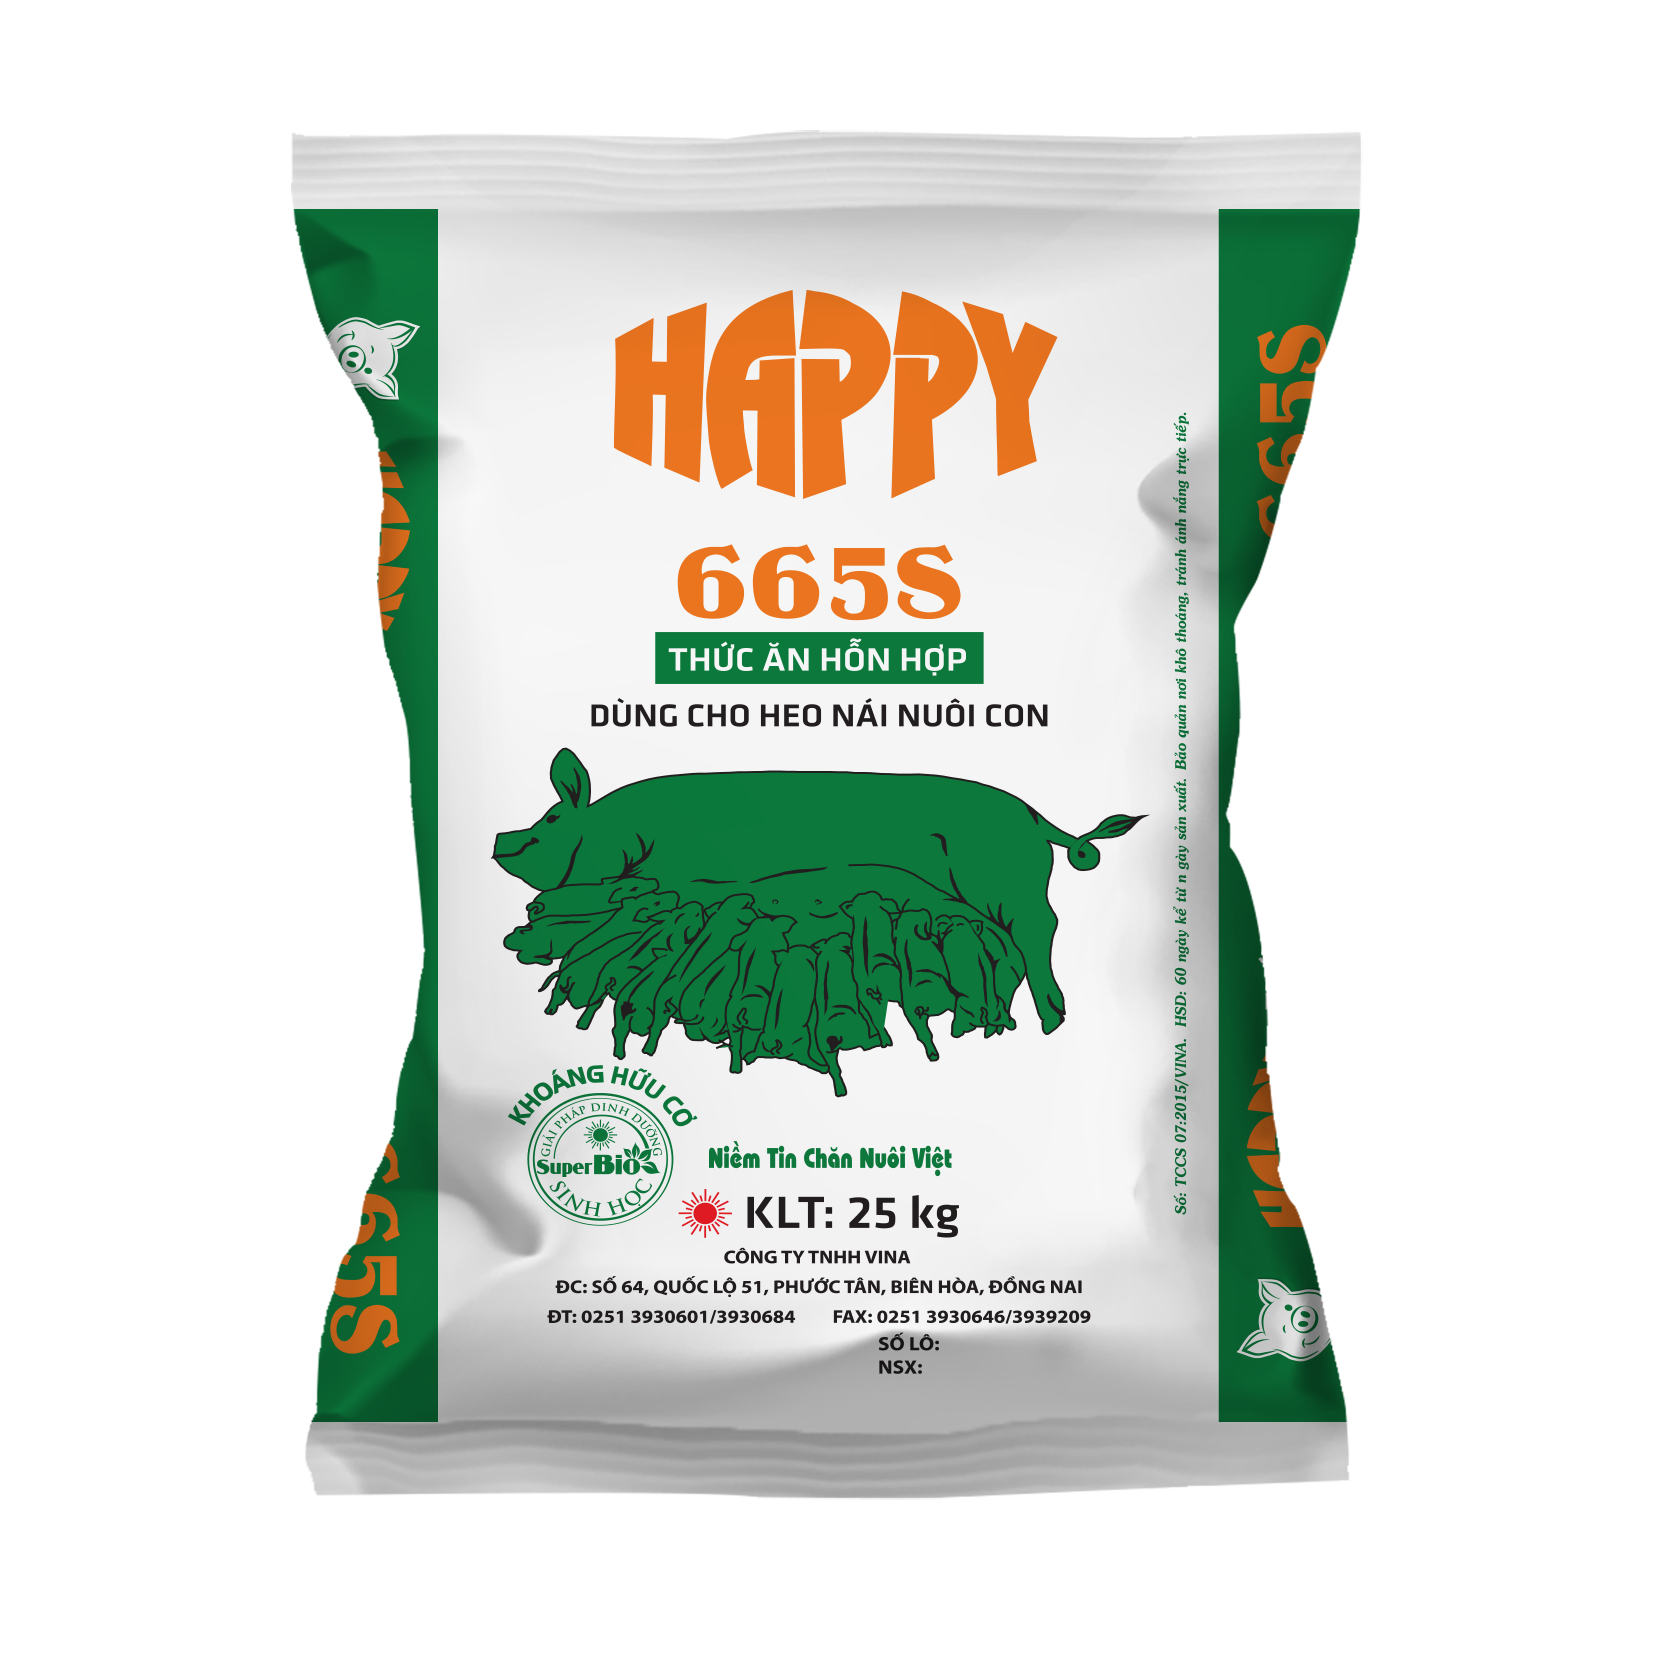 HAPPY 665S